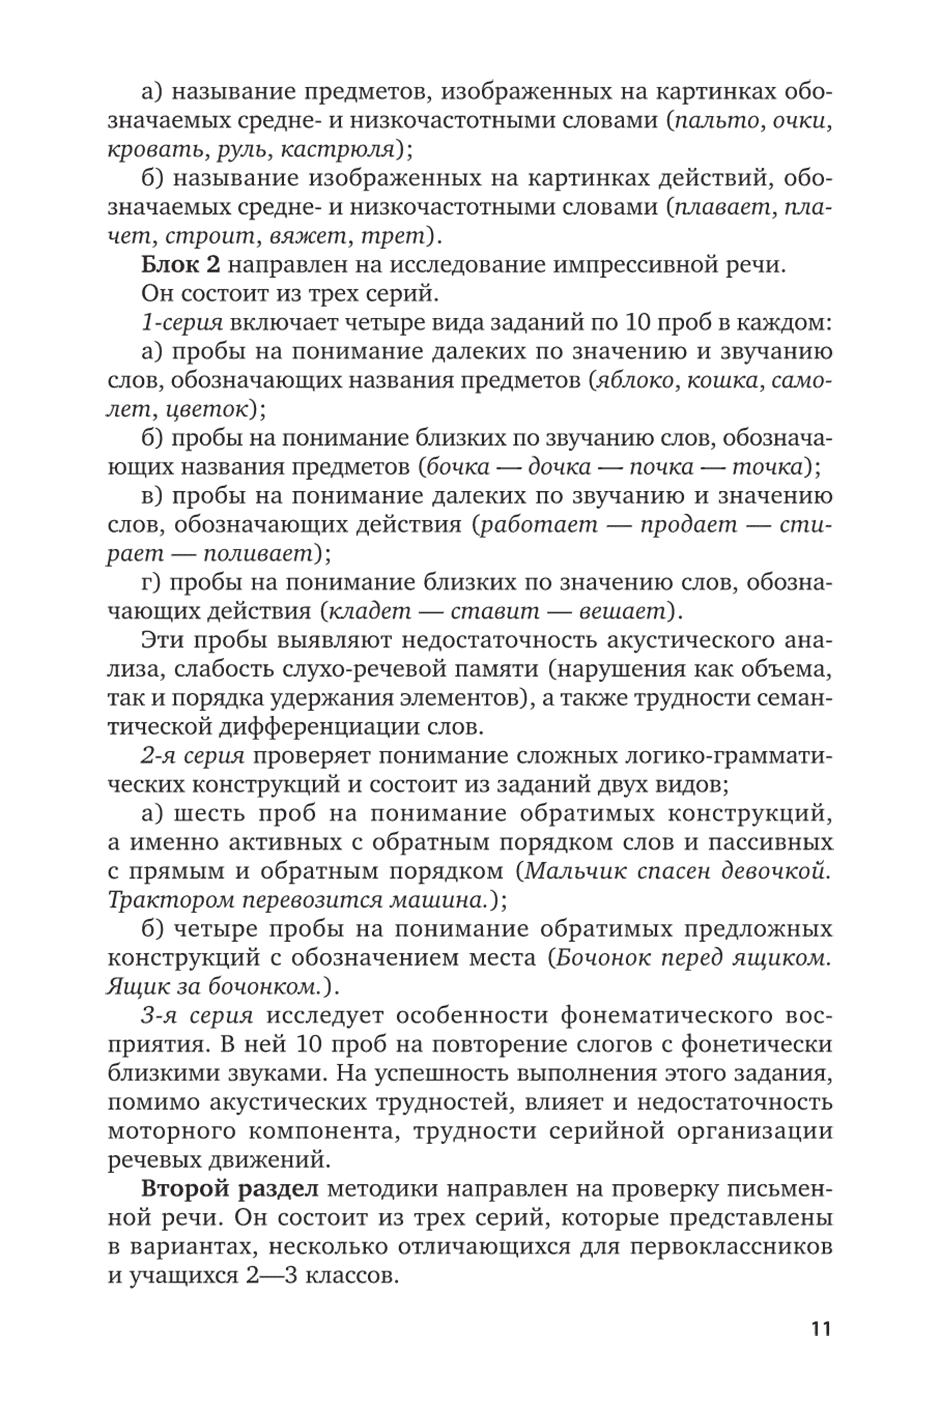 Пример страницы из книги "Диагностика речевых нарушений школьников" - Ахутина Т. В., Фотекова Т. А.